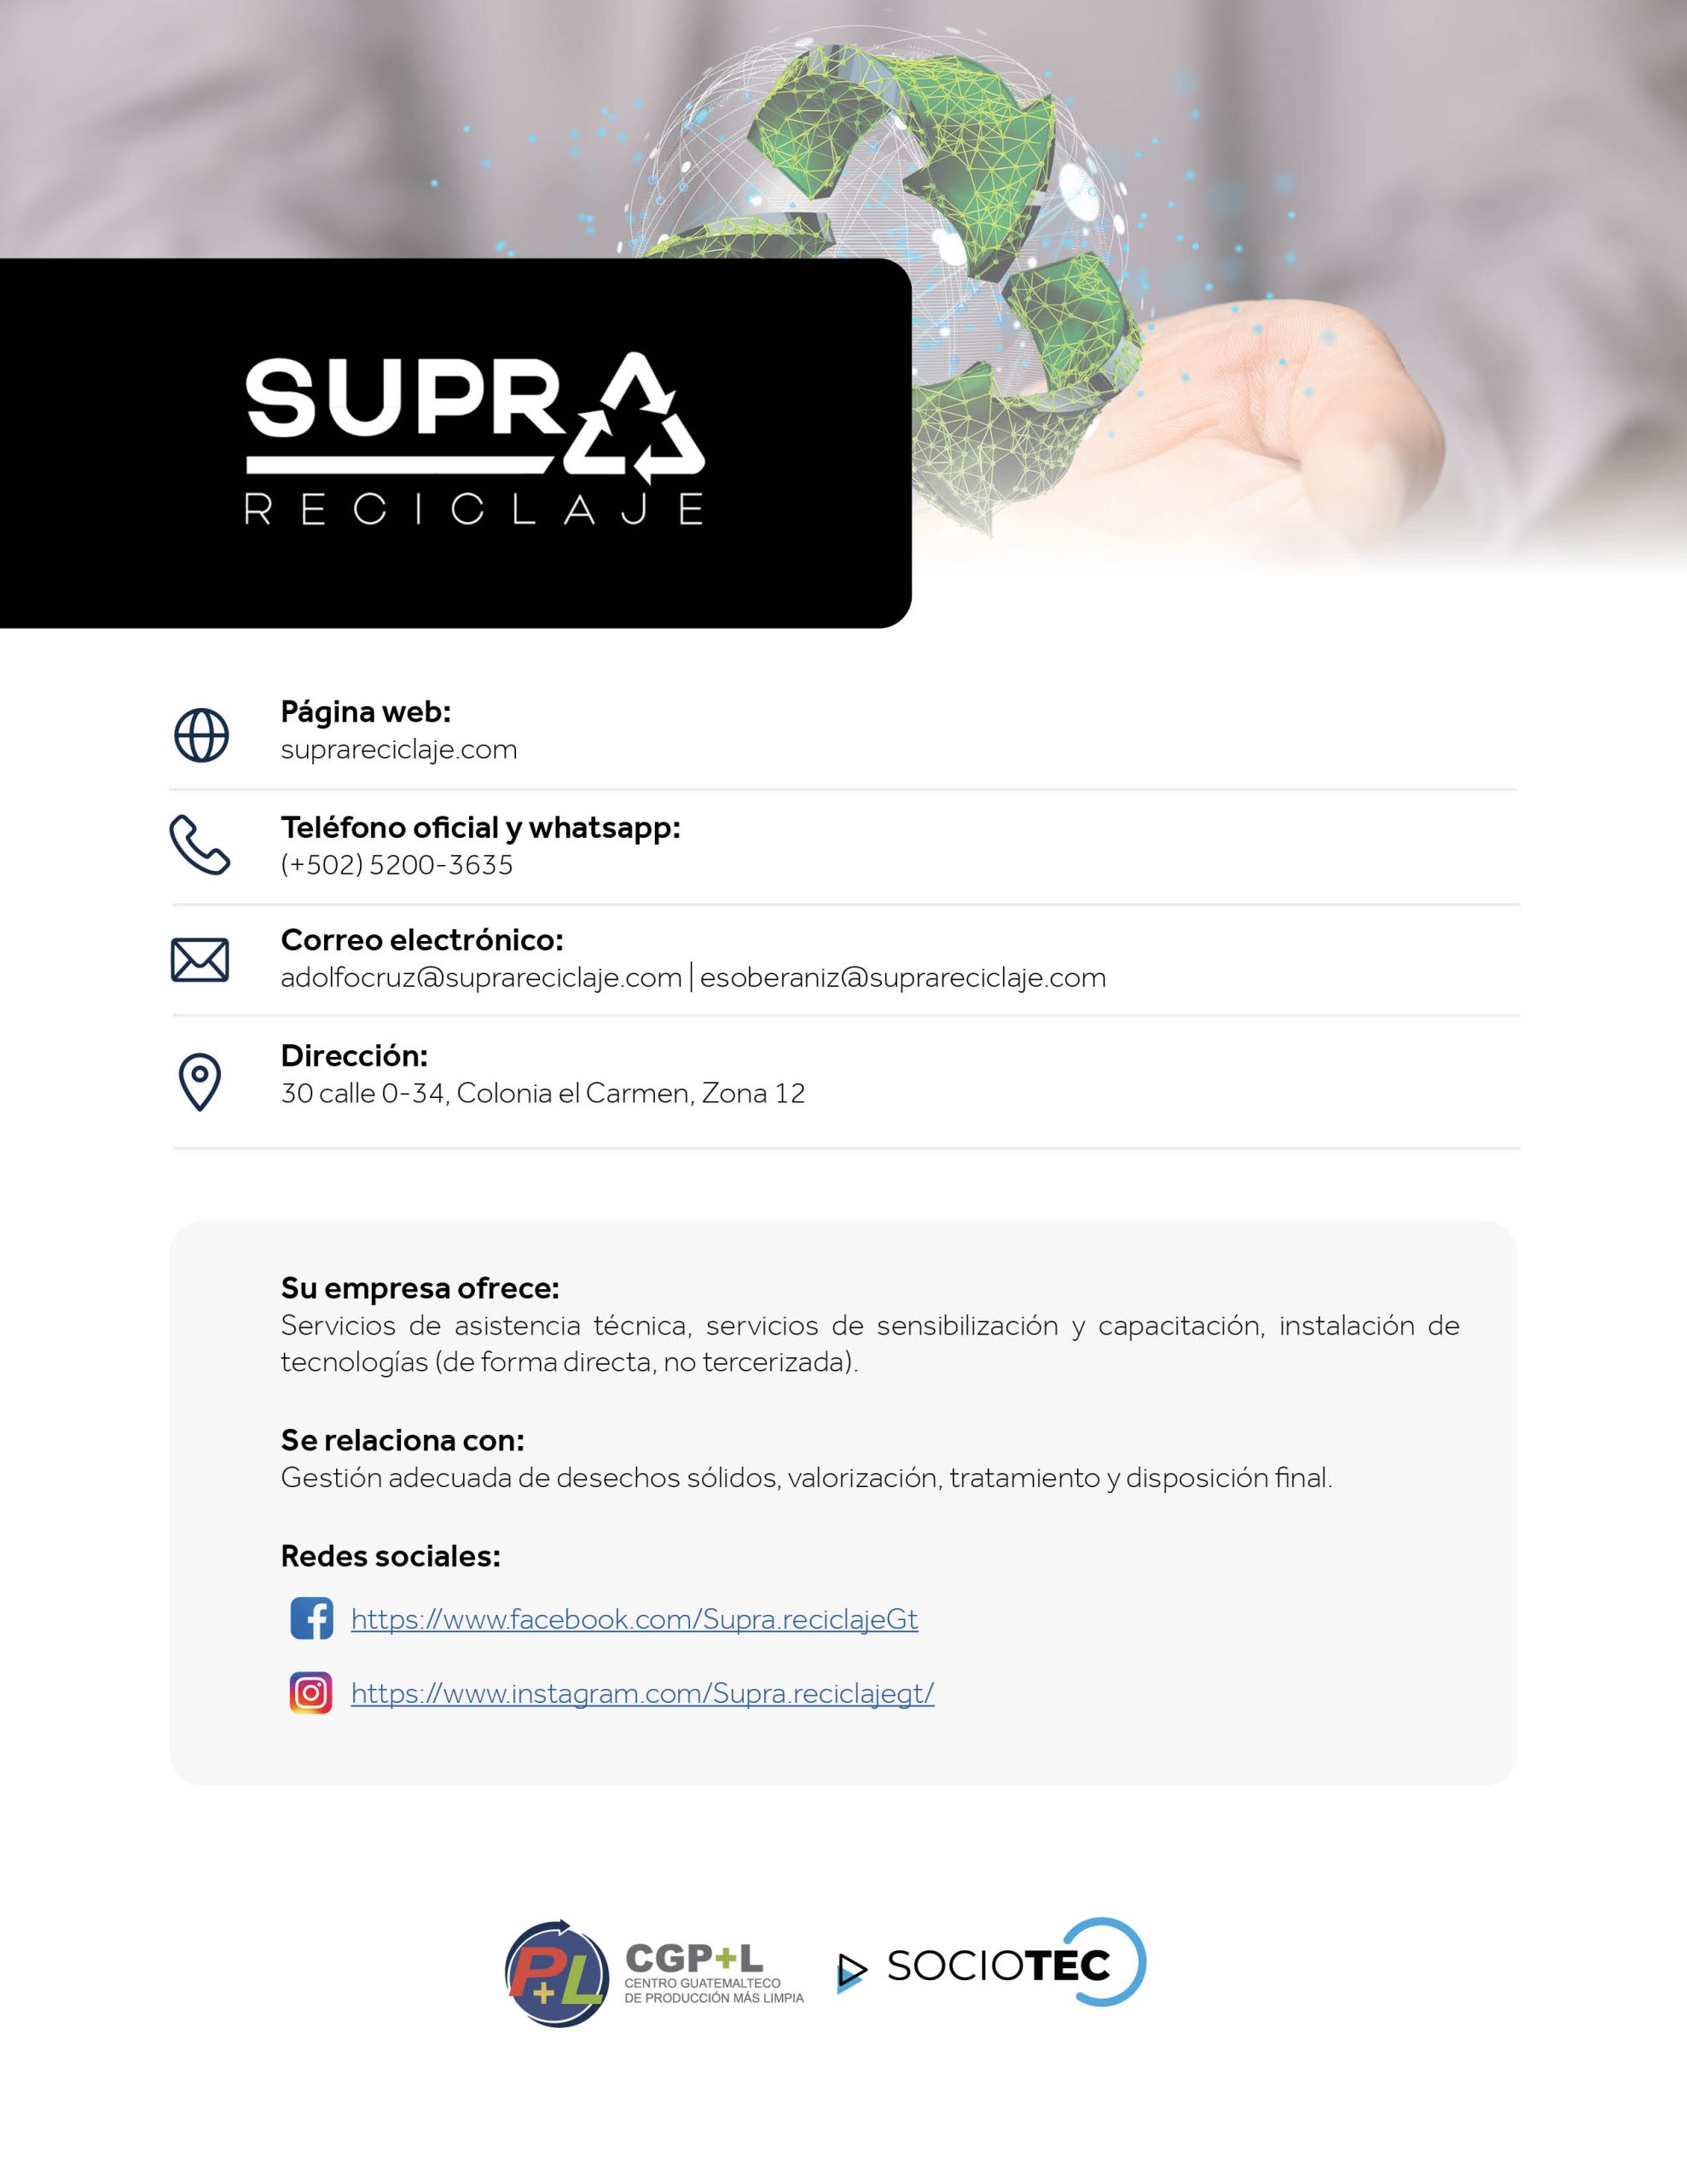 CatálogoSociosTec_Supra reciclaje